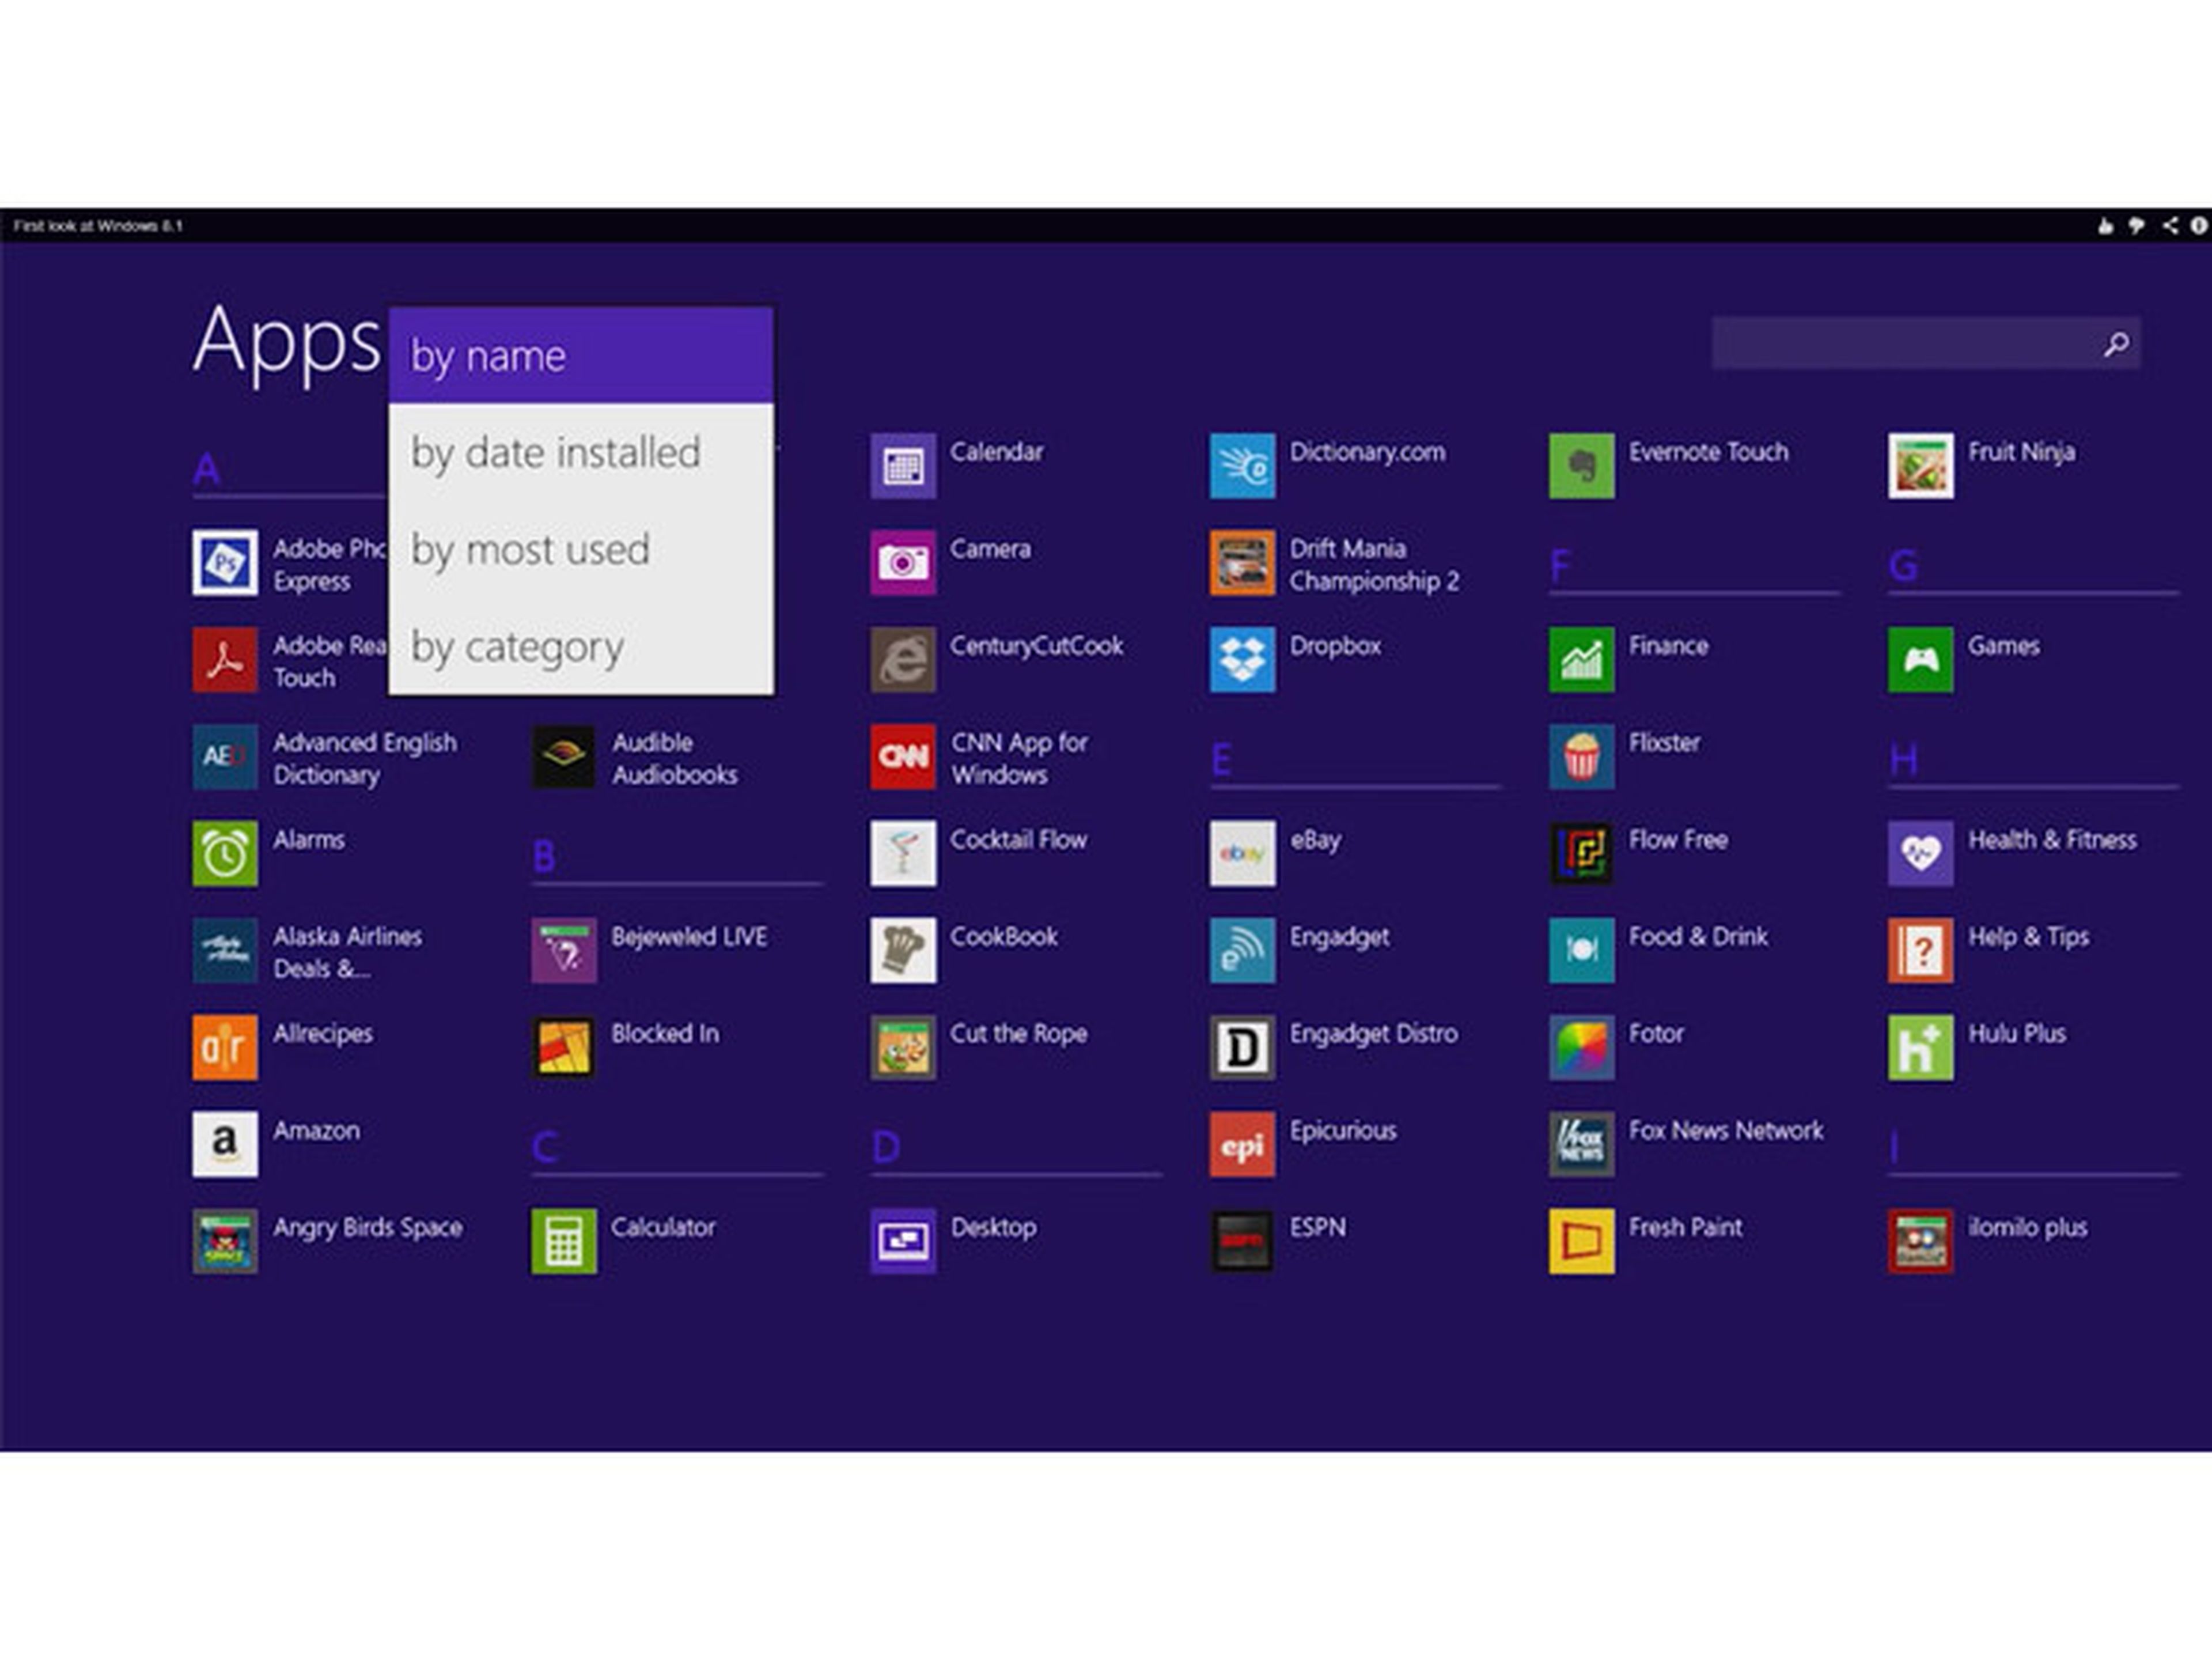 Vistas de las app en Windows 8.1